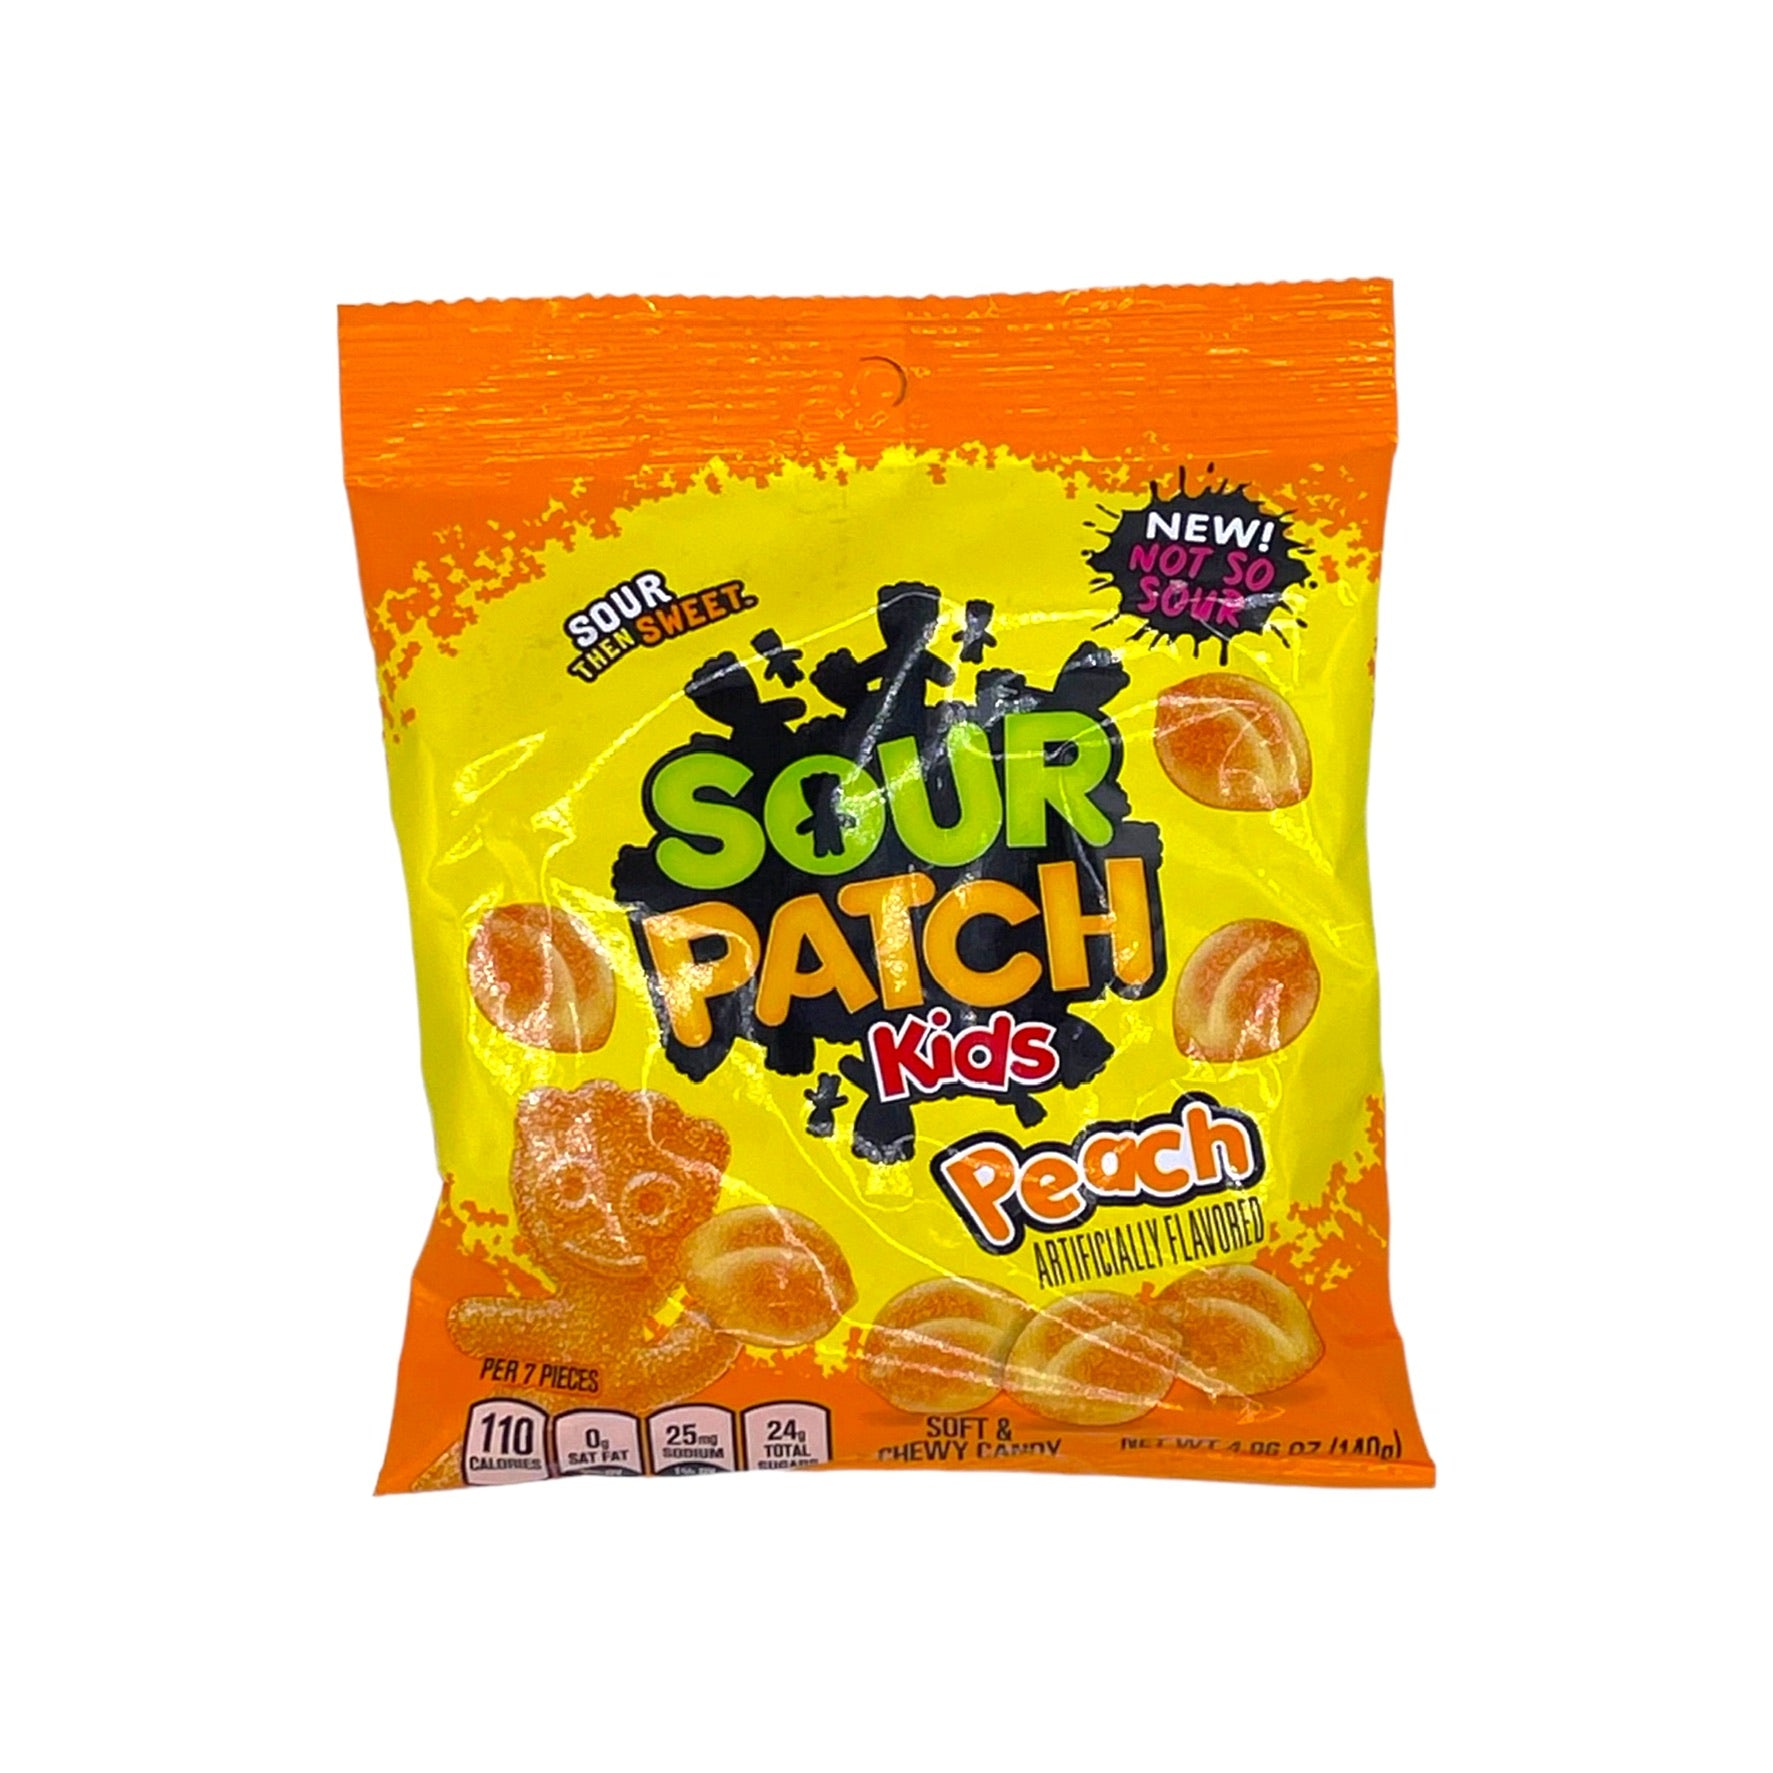 Sour Patch Kids Peach